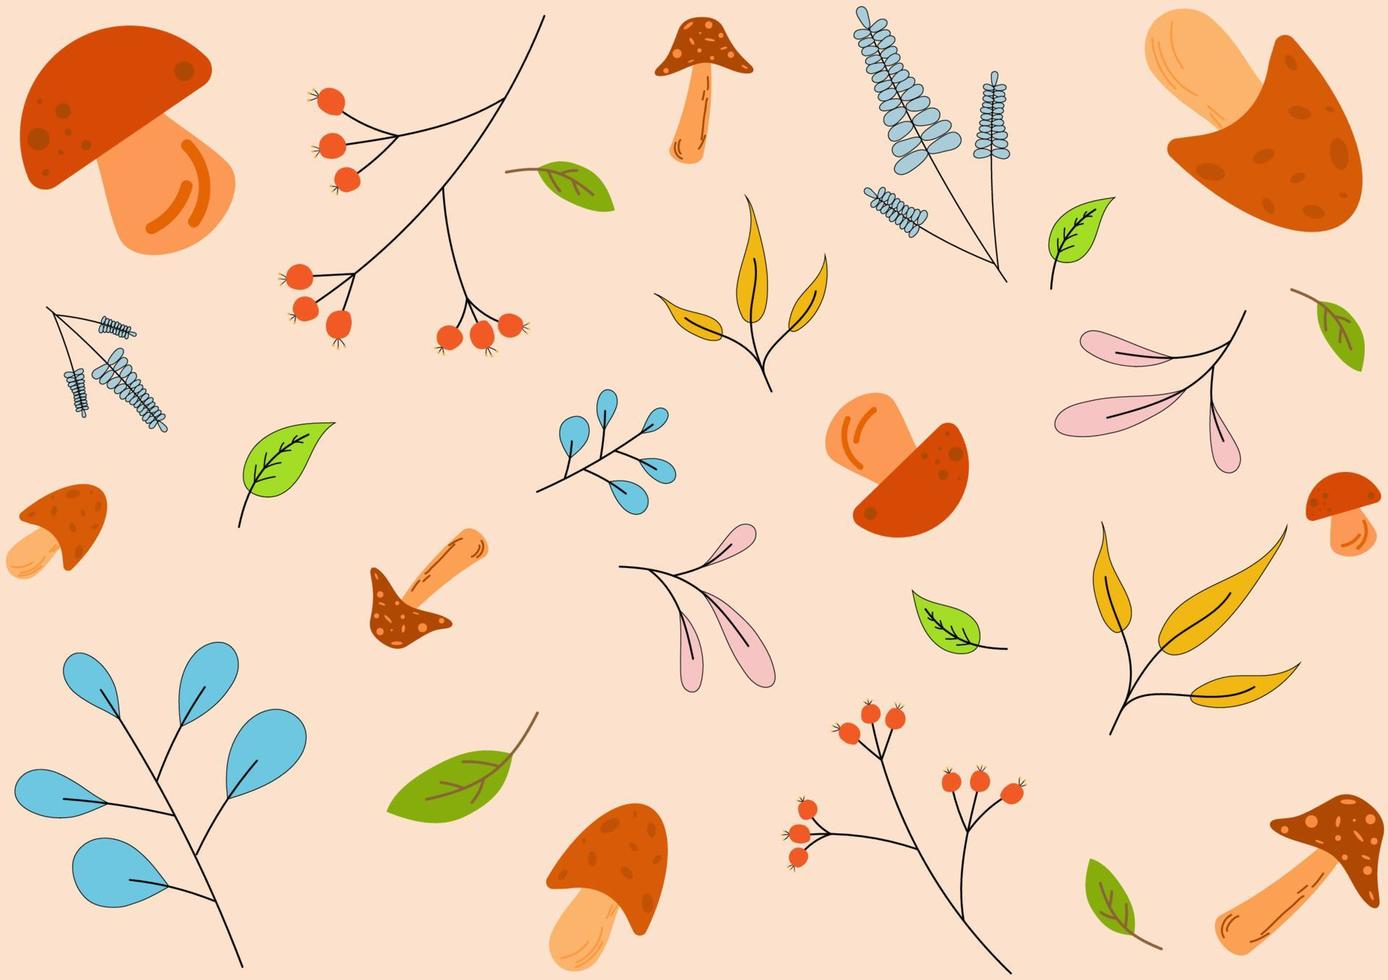 härlig svamp, blommor och löv anordnad växelvis. på en brun bakgrund, design för kläder, omslag mönster, påsar, handdukar, filtar, bebis föremål, tyg mönster. vektor